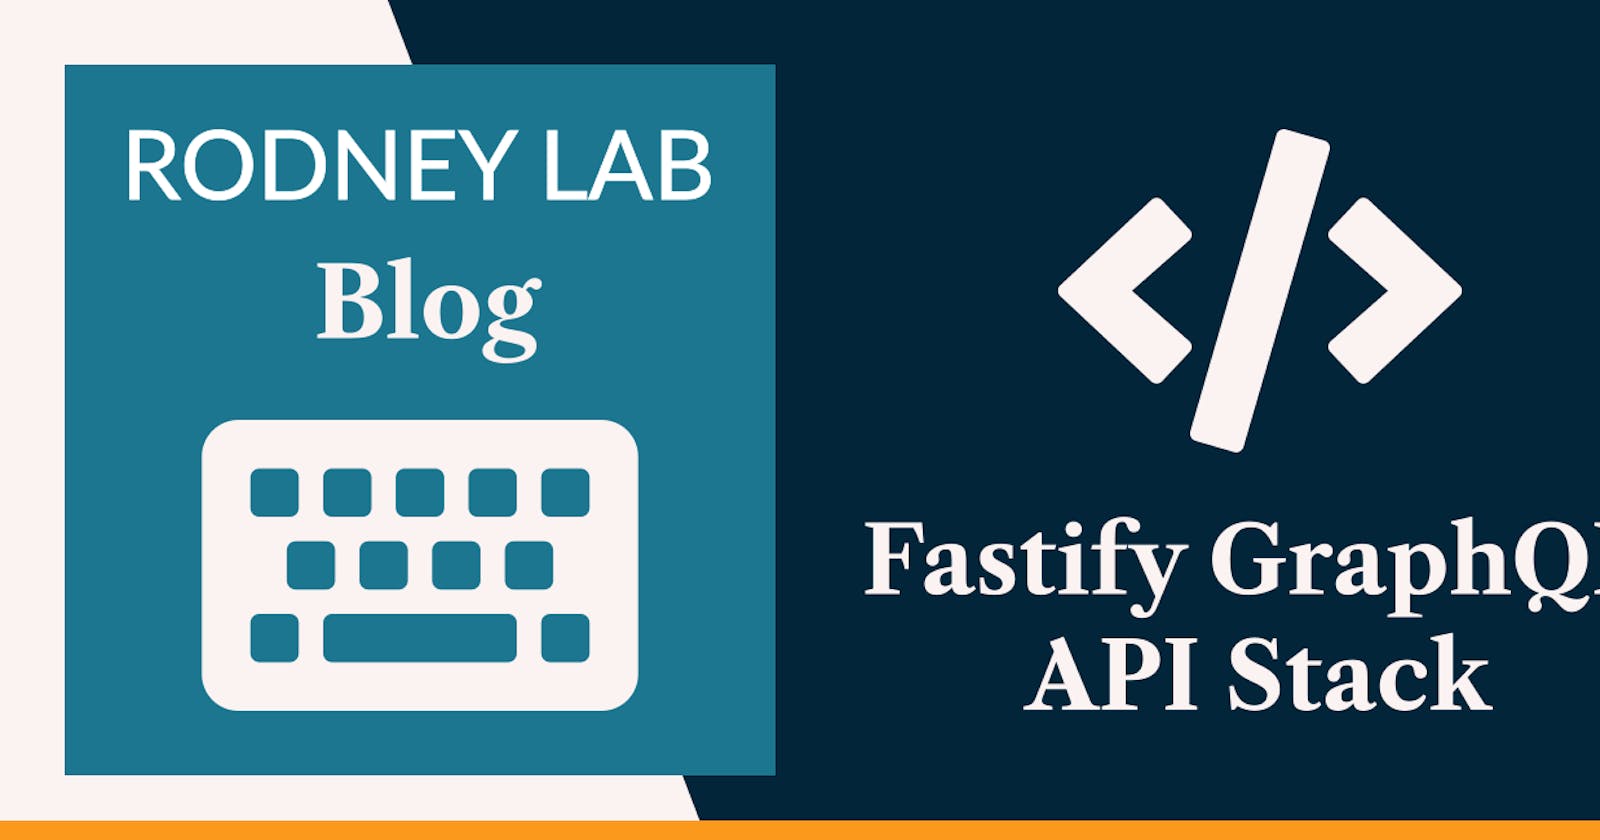 Fastify GraphQL API Stack